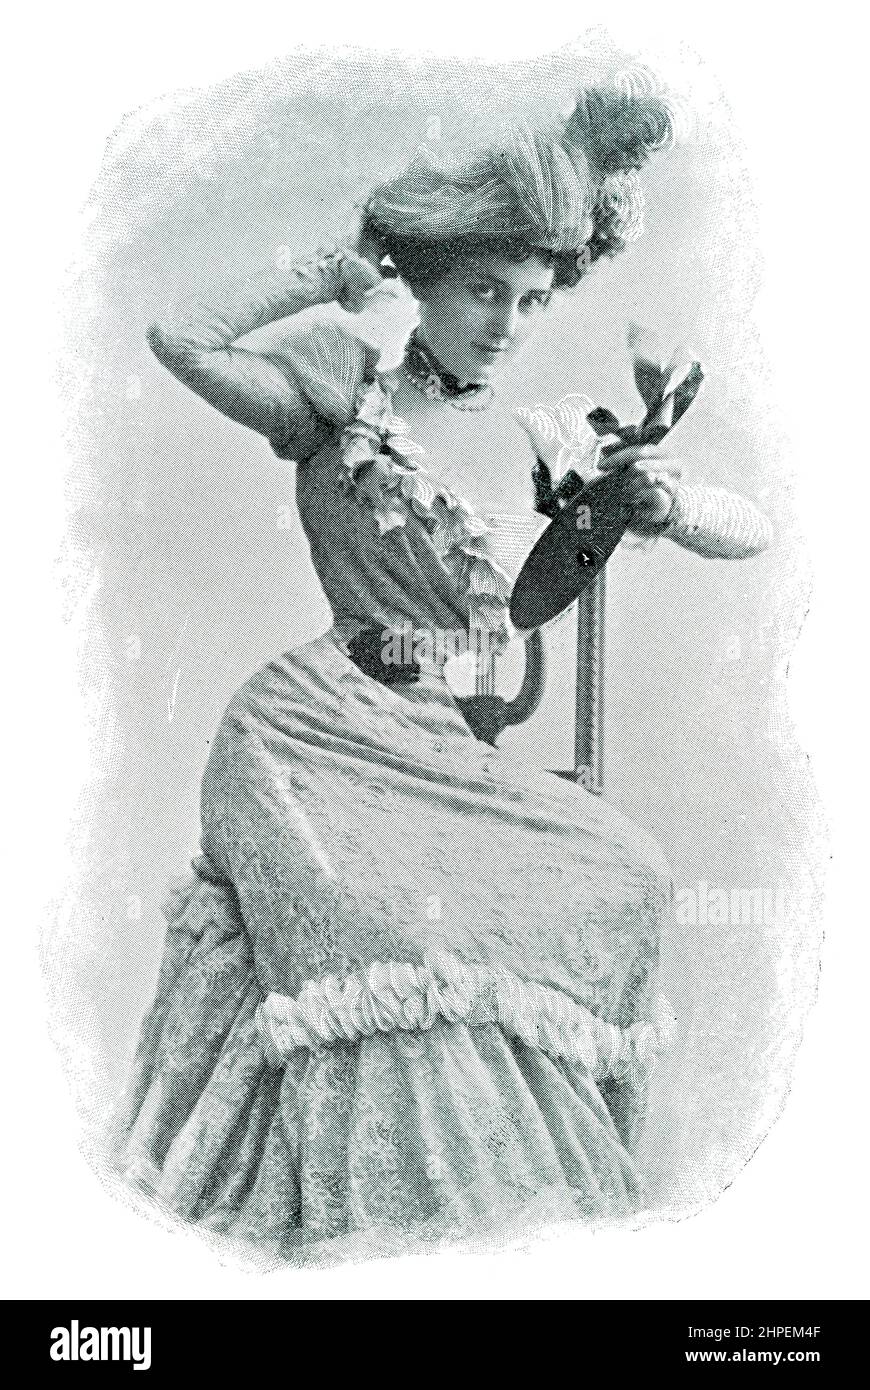 Retrato de una mujer con ropa de moda de ese tiempo. Imagen de la revista teatral franco-alemana ilustrada 'Das Album', 1898. Foto de stock